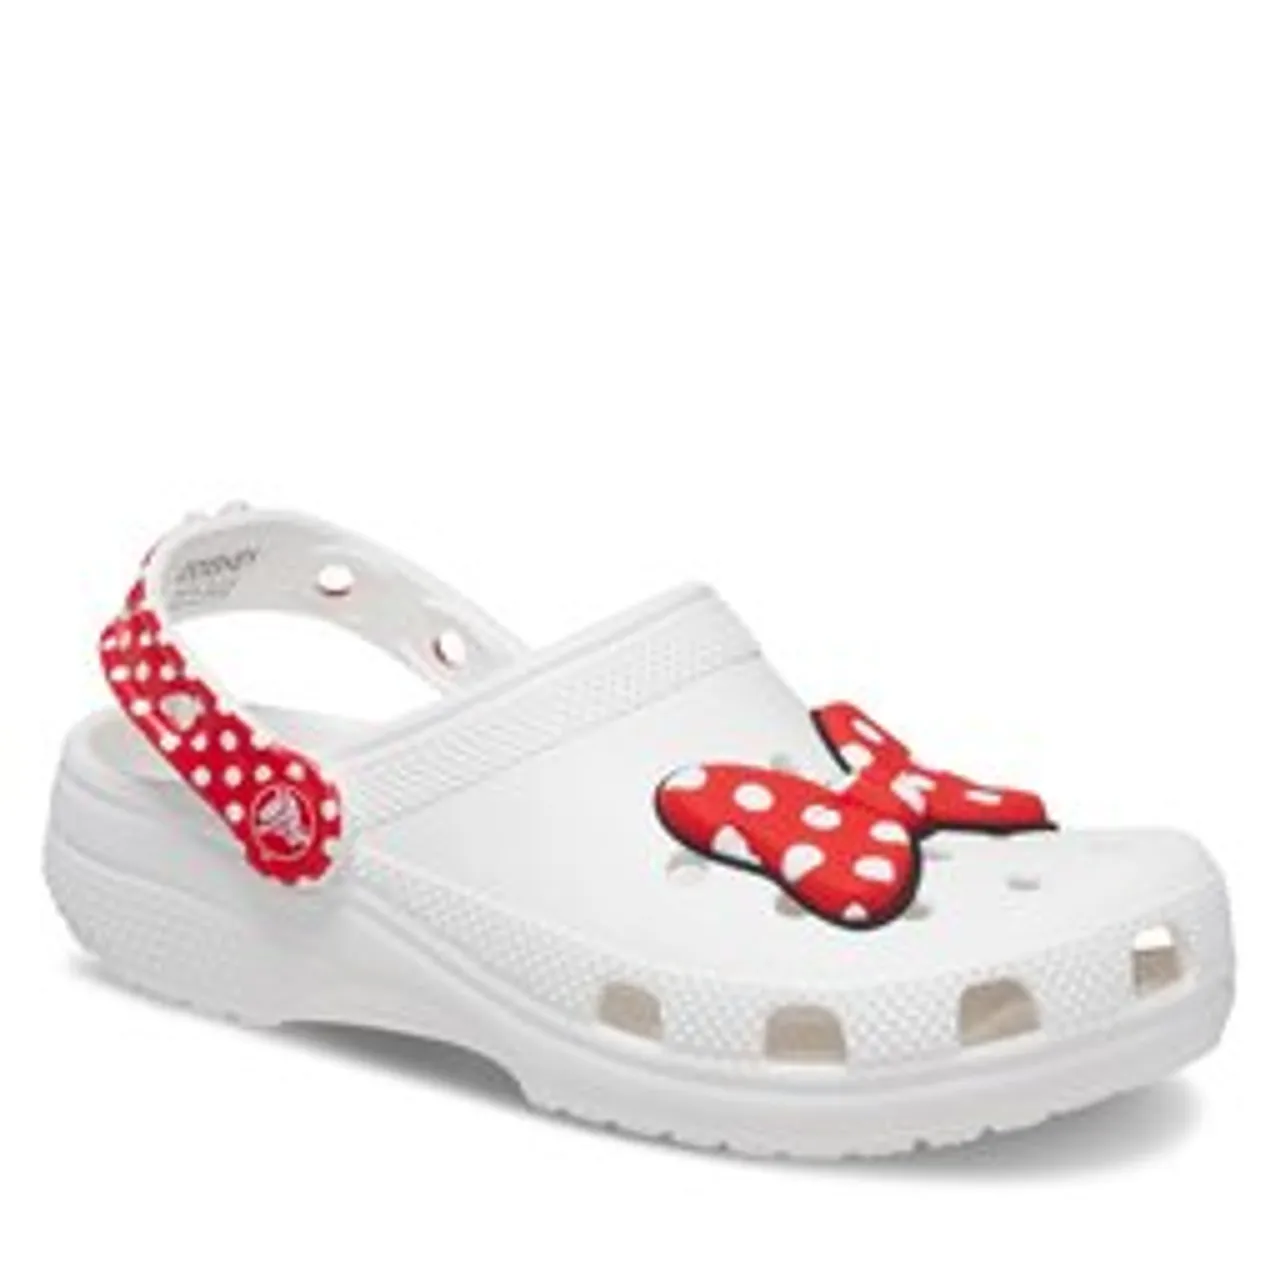 Pantoletten Crocs Classic Disney Minnie Mouse Clog T208710 White/Red 119